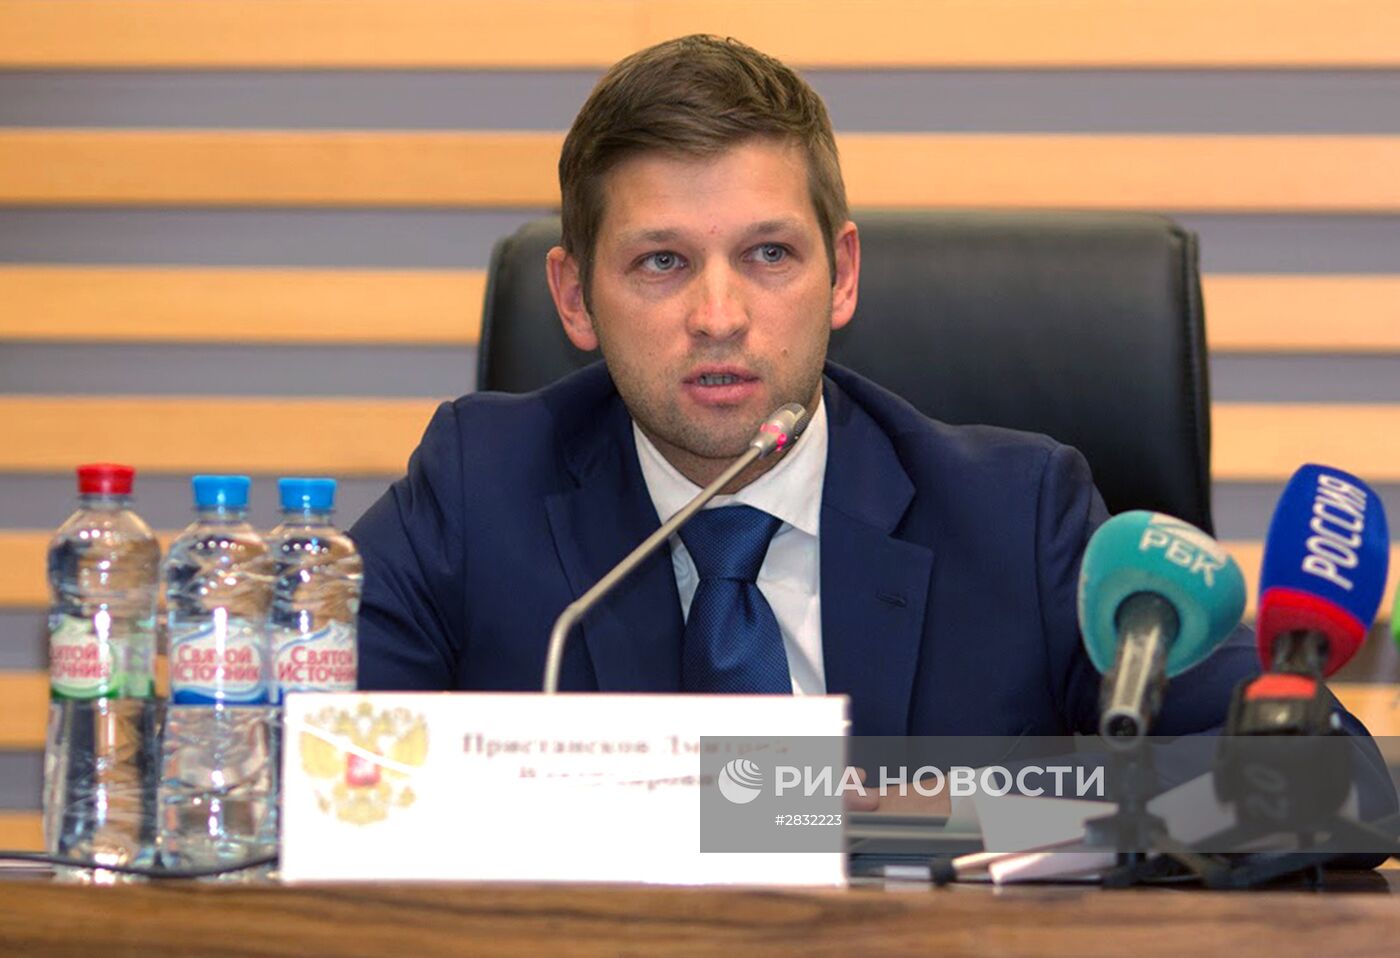 Первый вице-премьер И. Шувалов представил нового главу Росимущества Д. Пристанскова